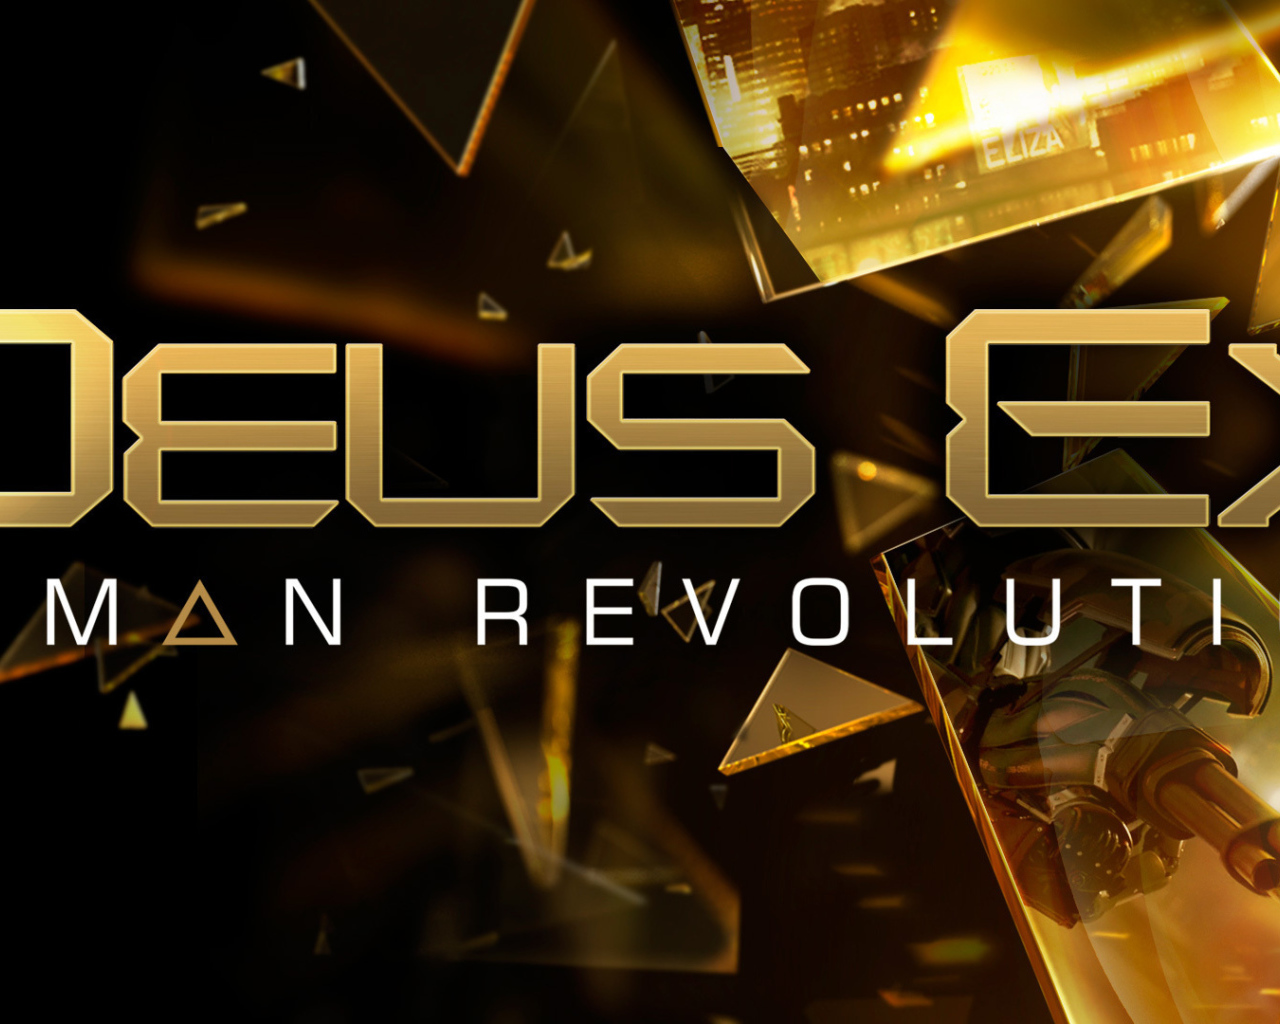 Deus Ex: Human Revolution: революции здесь